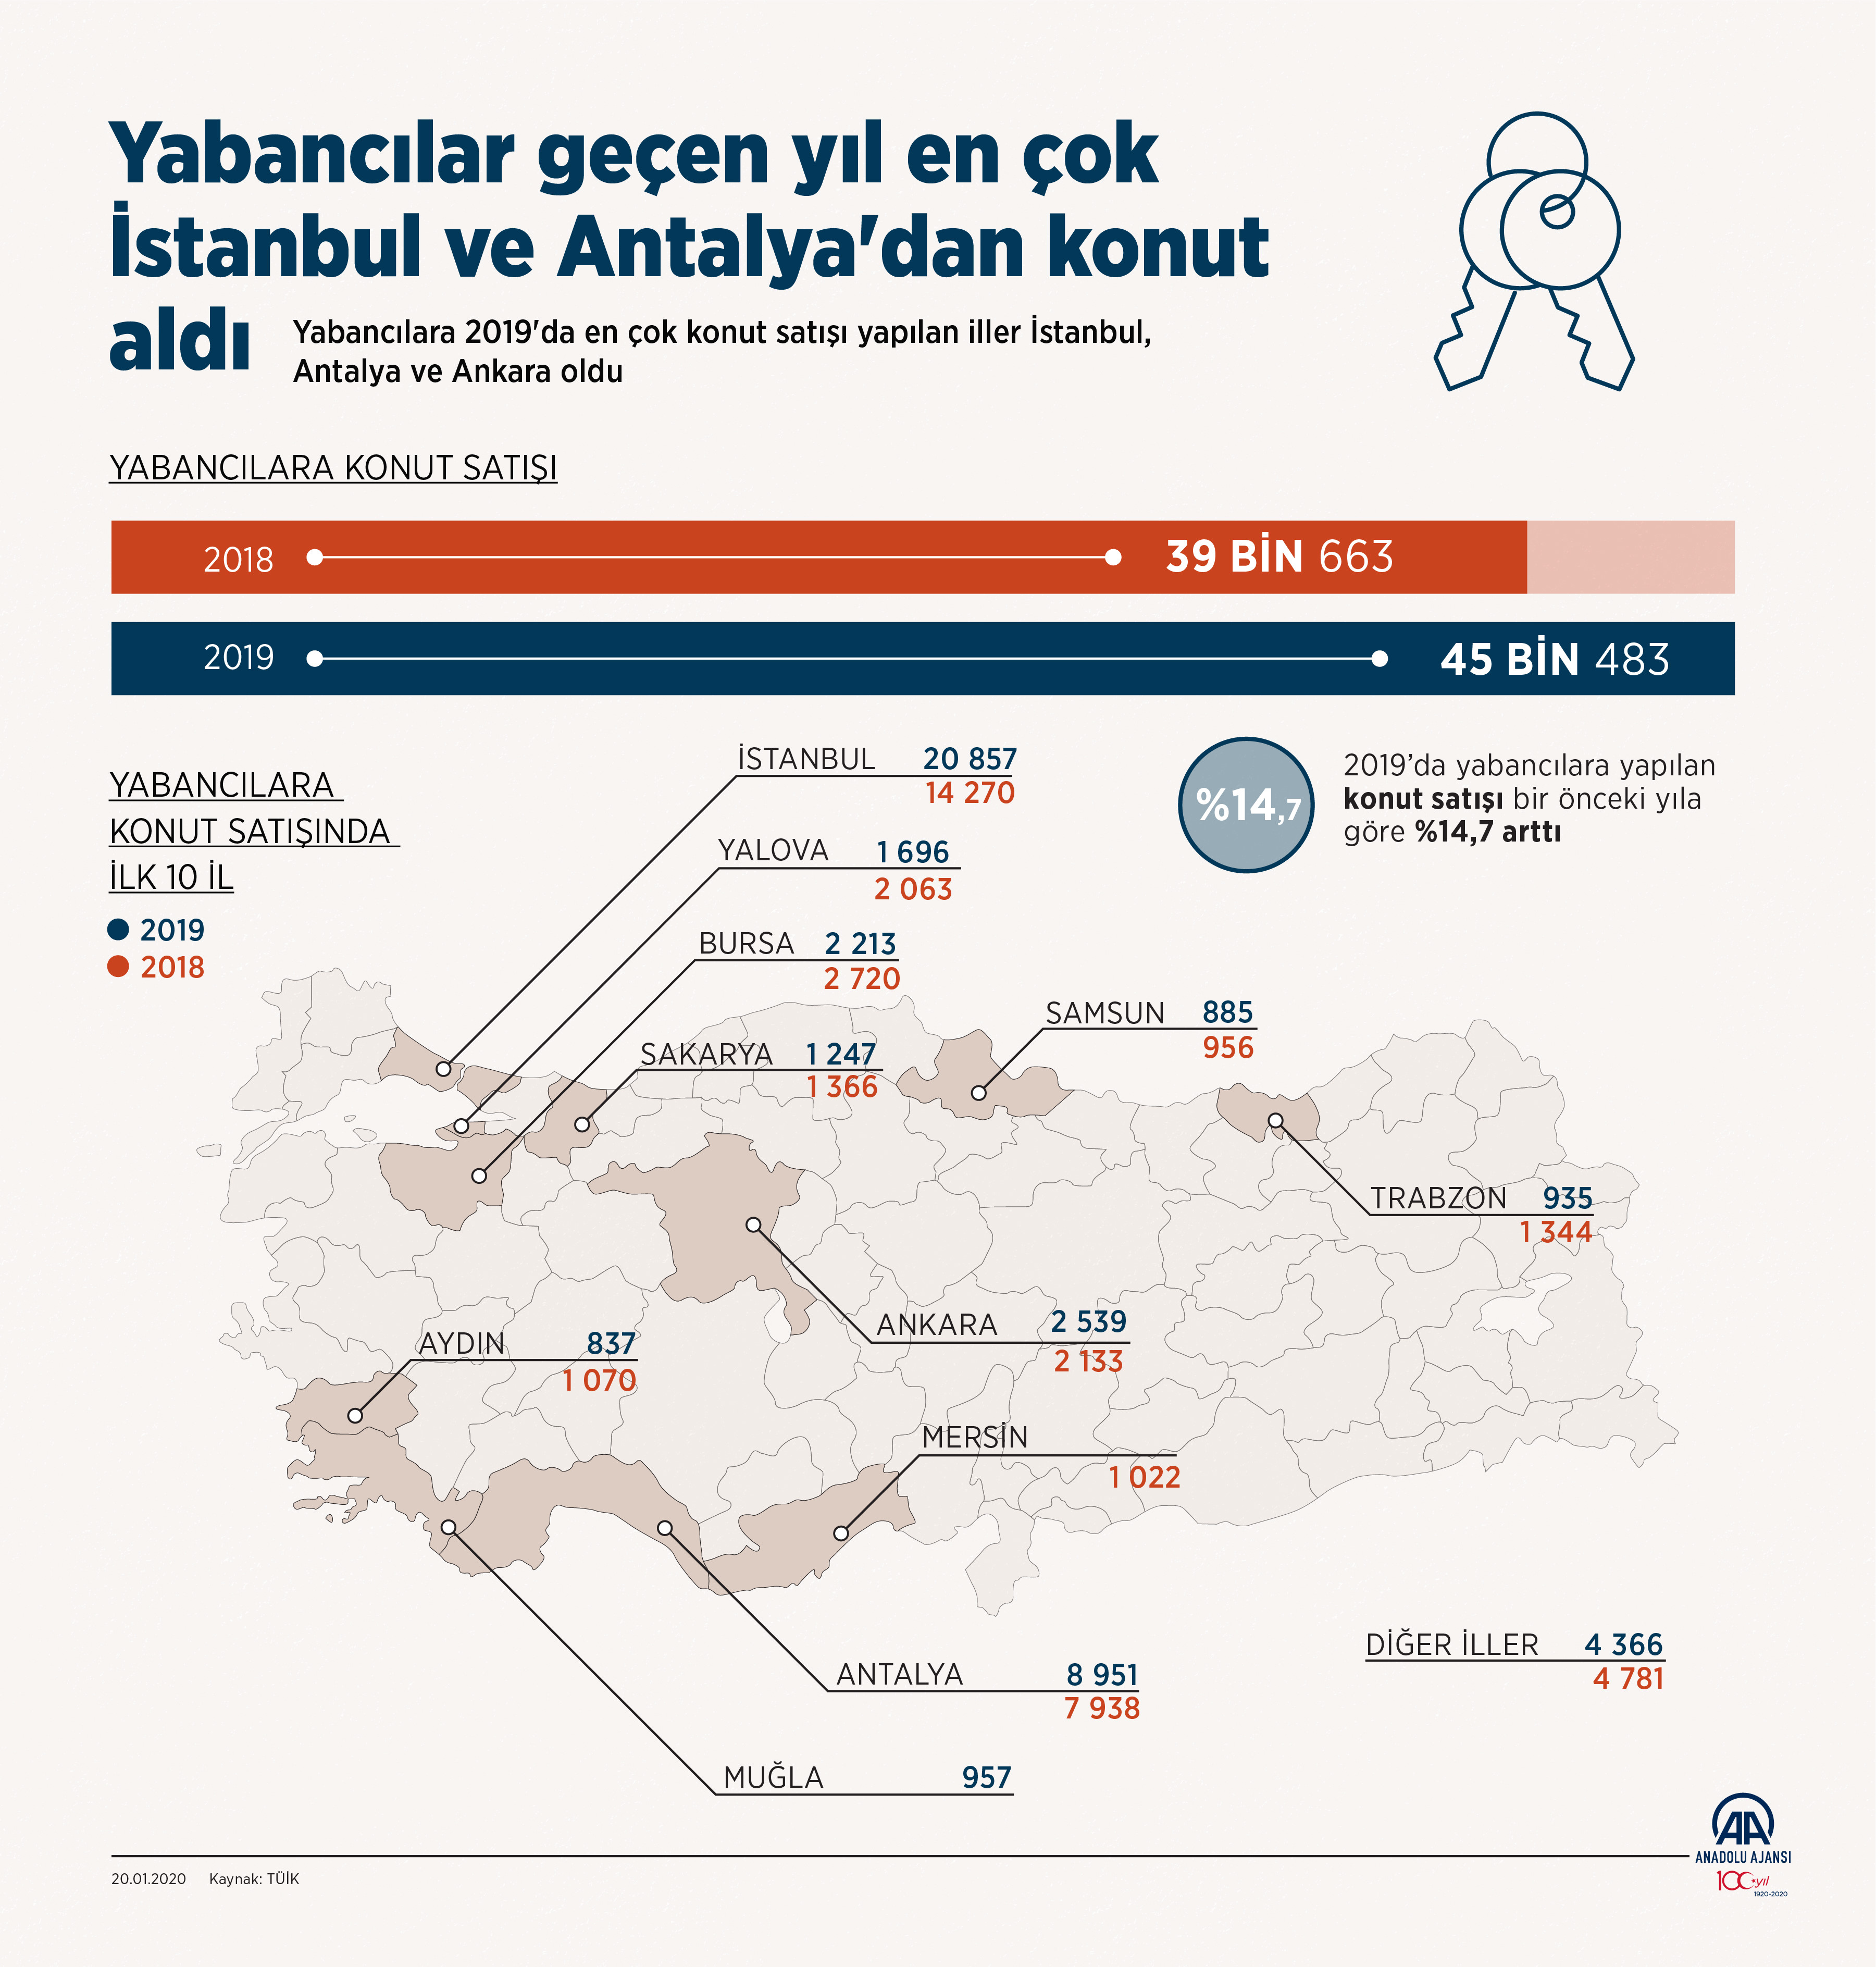 Yabancılar geçen yıl en çok İstanbul ve Antalya'dan konut aldı